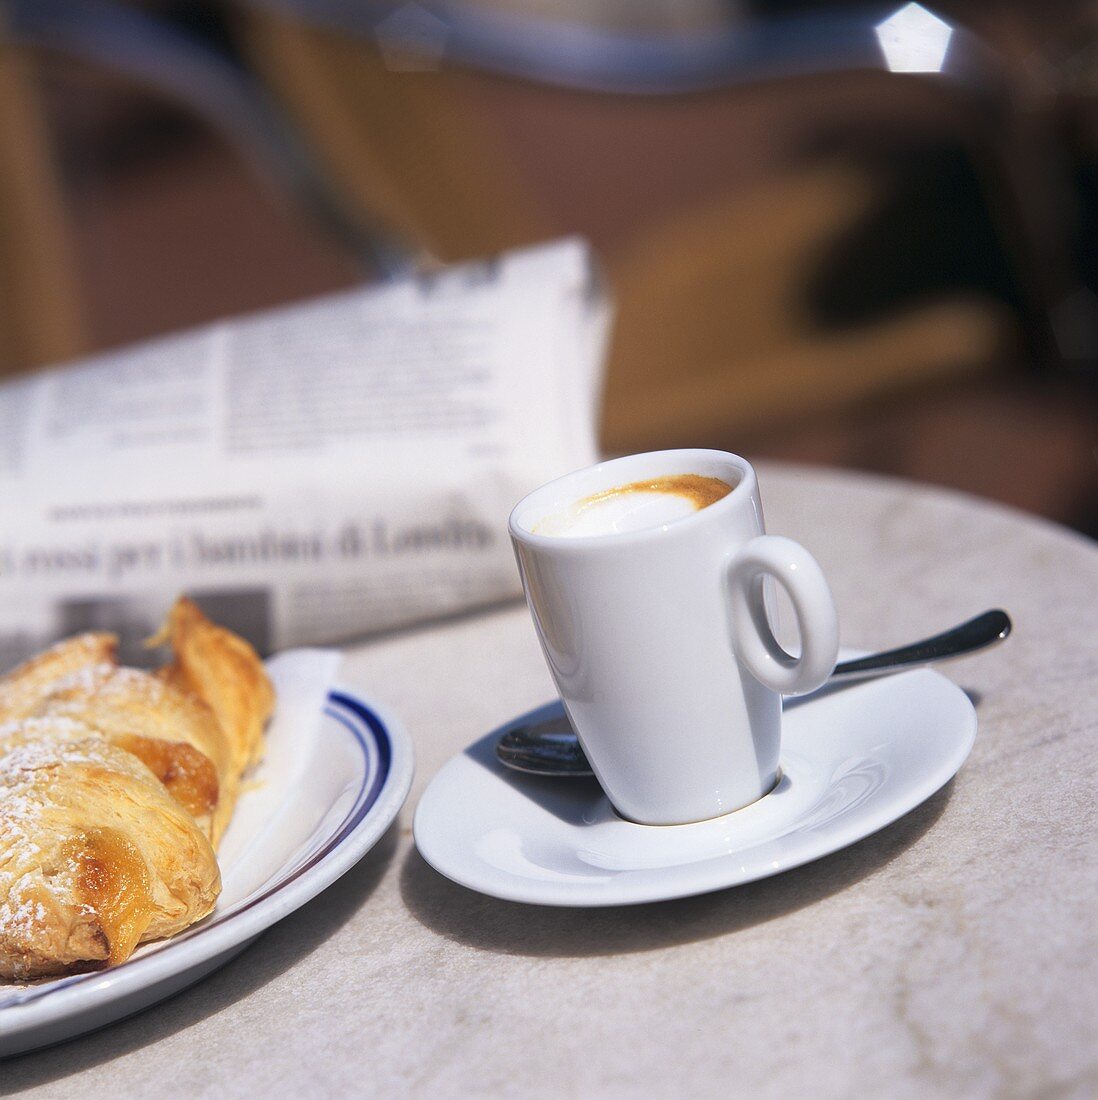 Caffè macchiato with brioche and newspaper